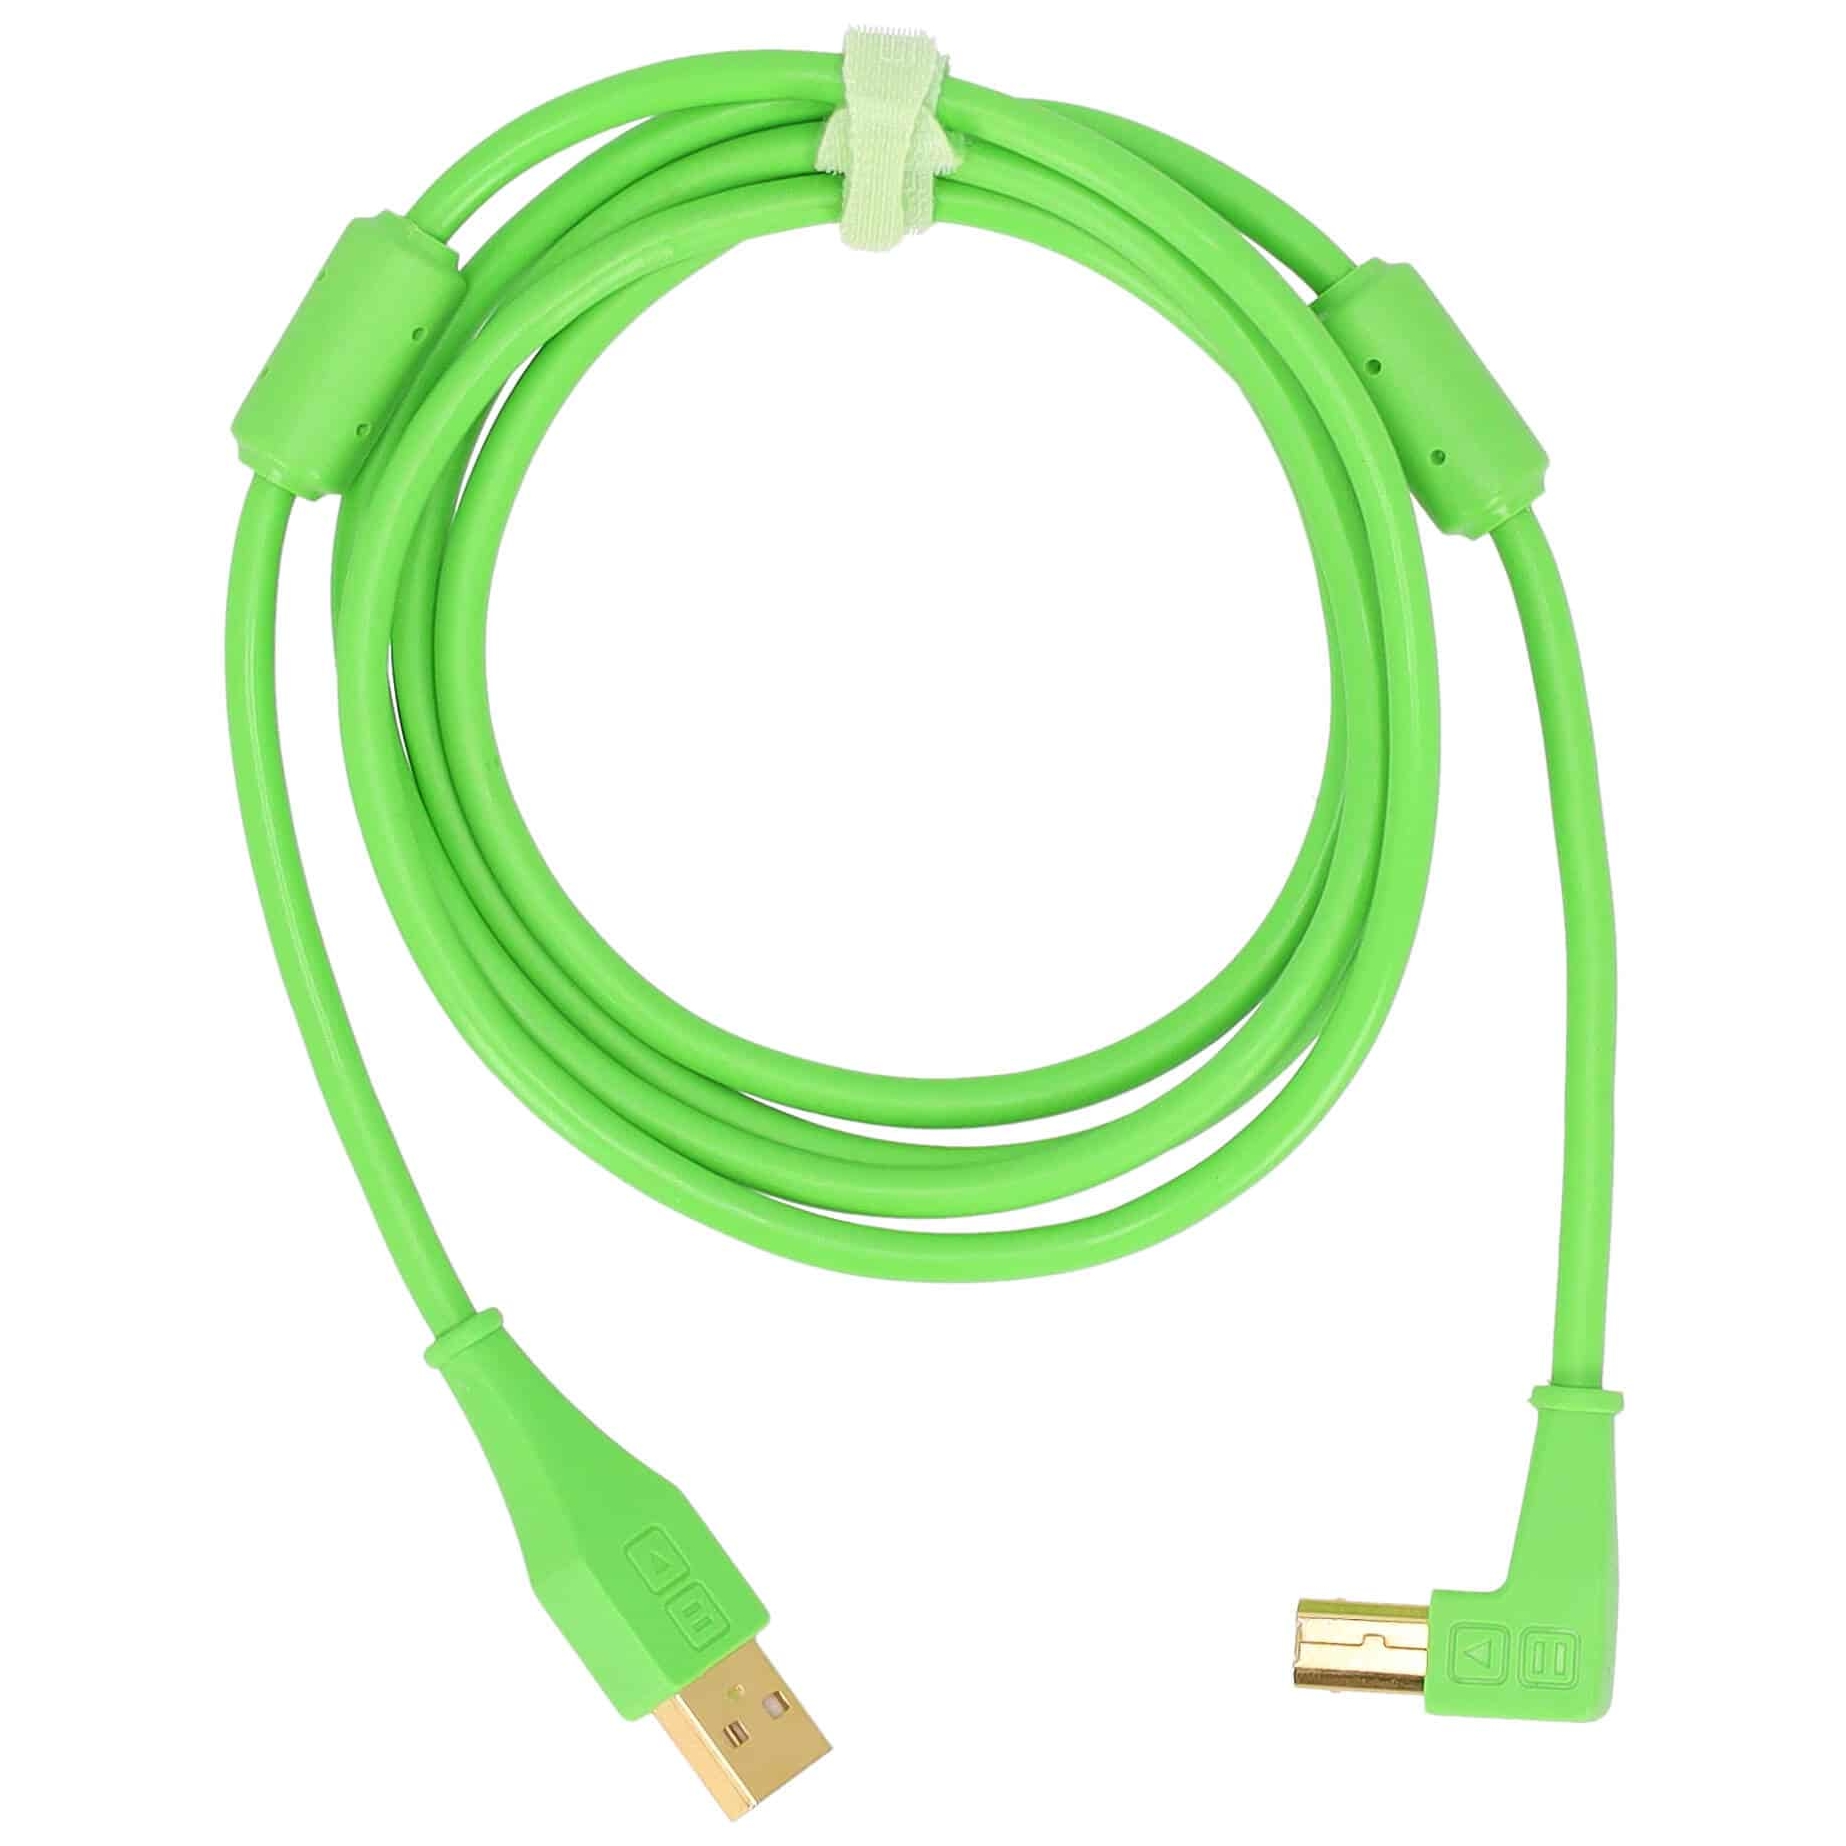 DJ TechTools Chroma Cable Angled Green